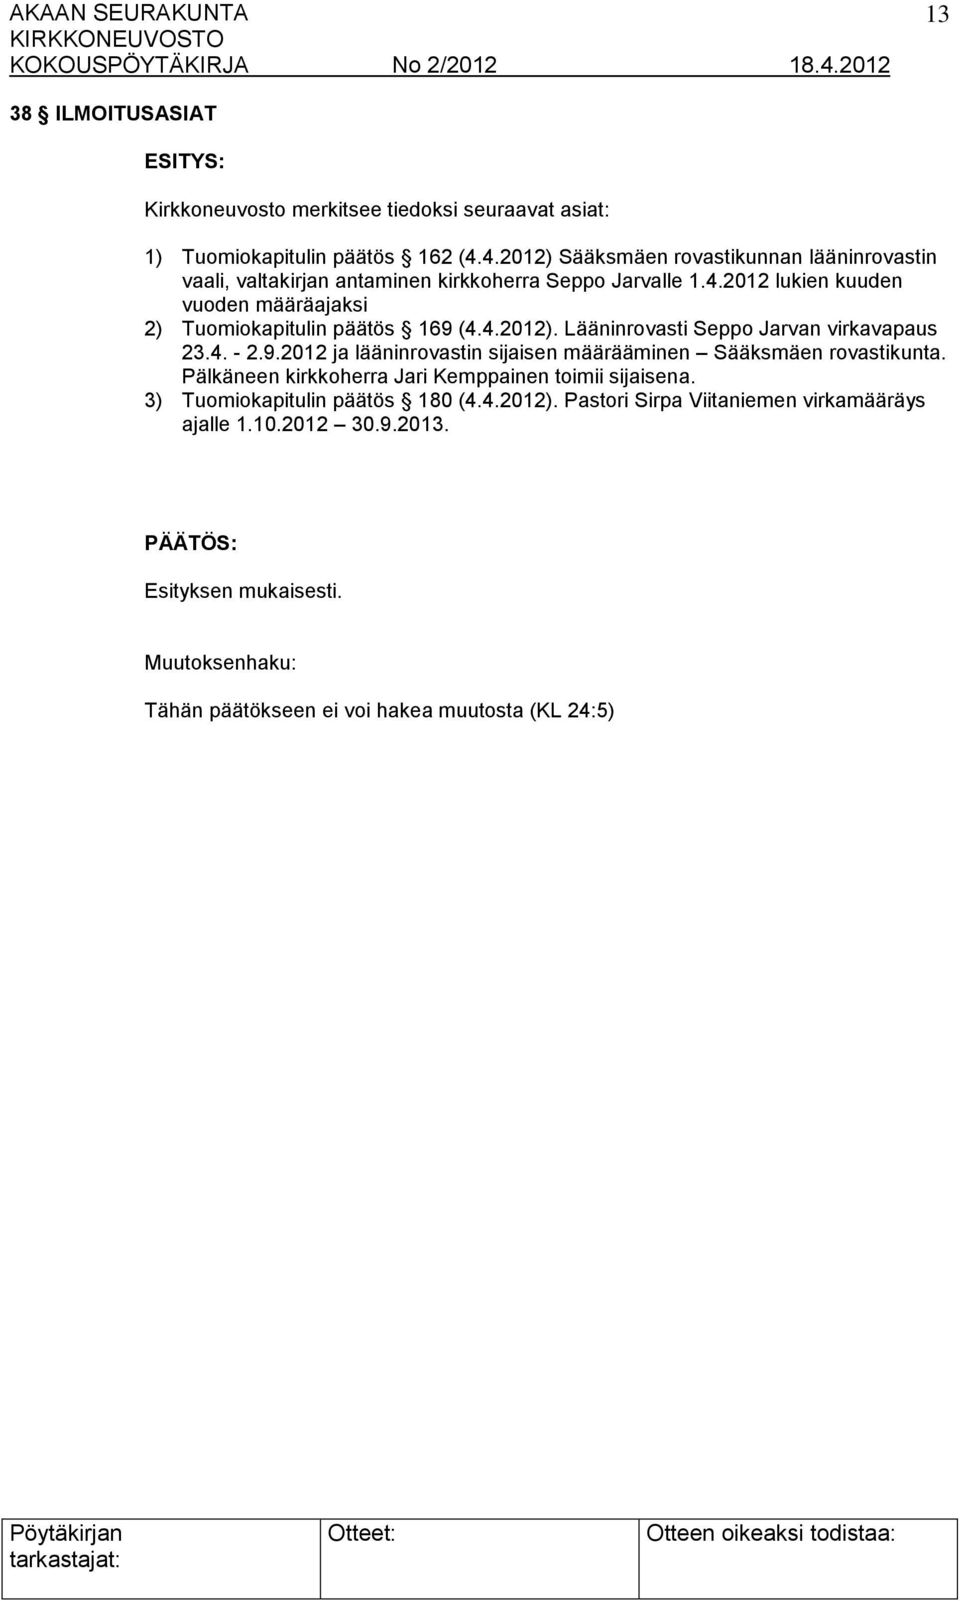 4.2012). Lääninrovasti Seppo Jarvan virkavapaus 23.4. - 2.9.2012 ja lääninrovastin sijaisen määrääminen Sääksmäen rovastikunta.